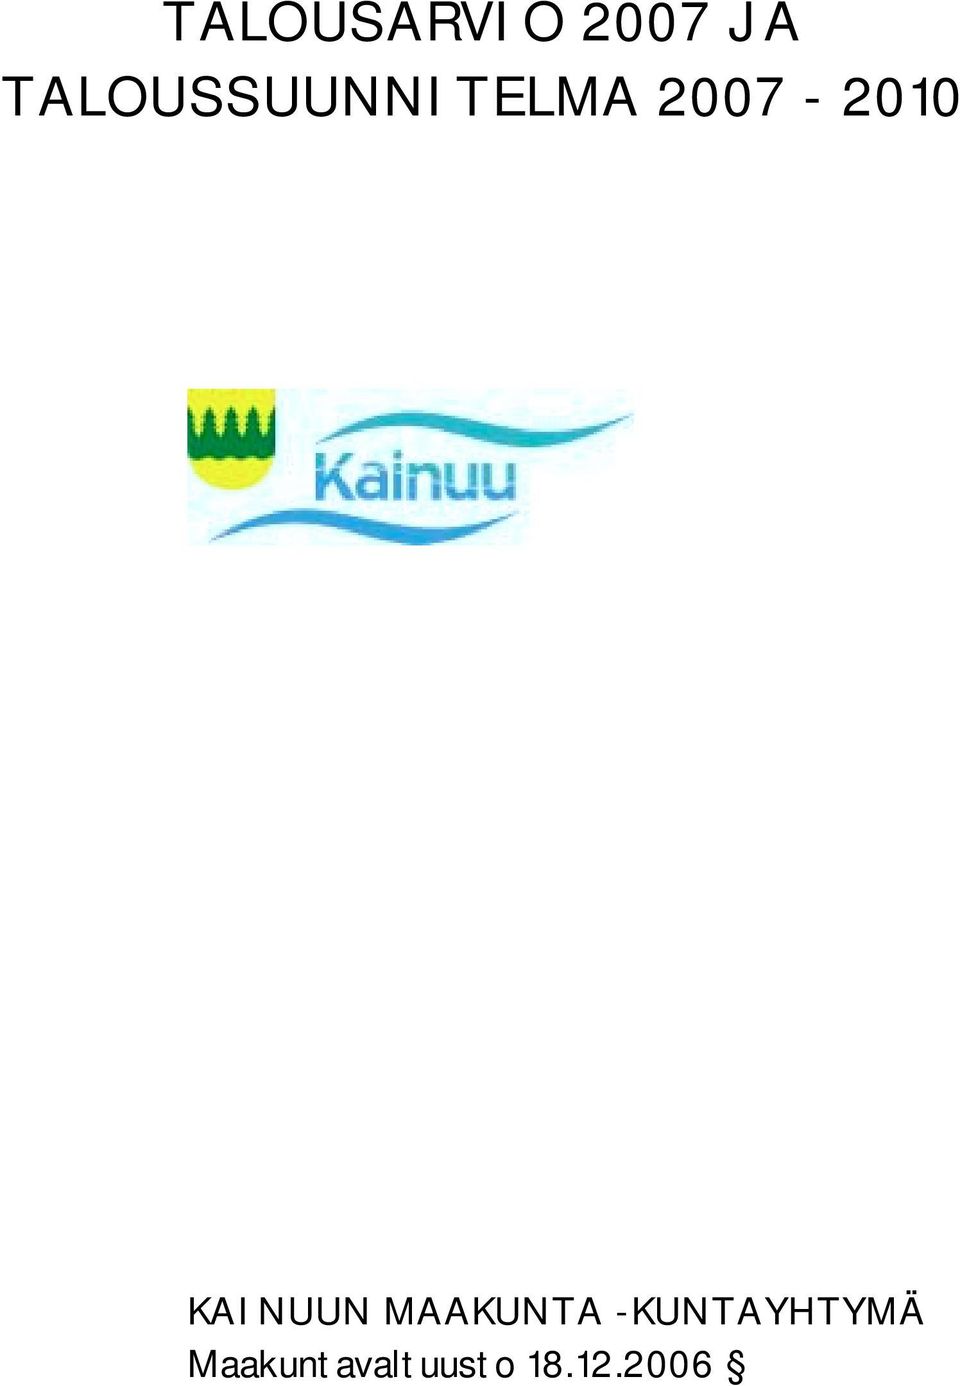 2007-2010 KAINUUN MAAKUNTA